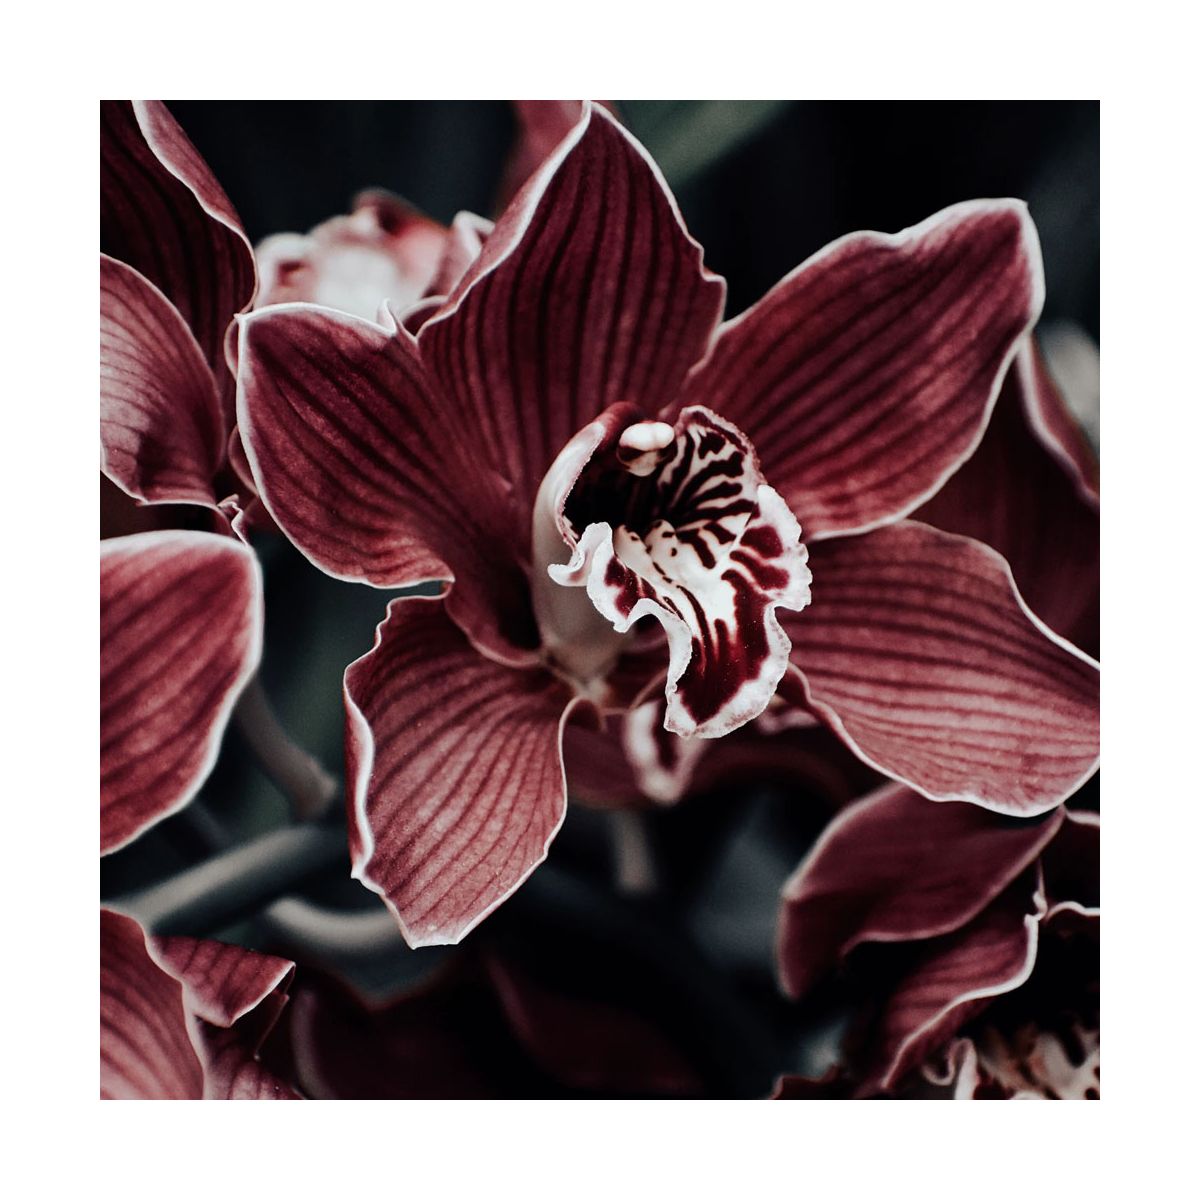 Fragrance Orchidée noire